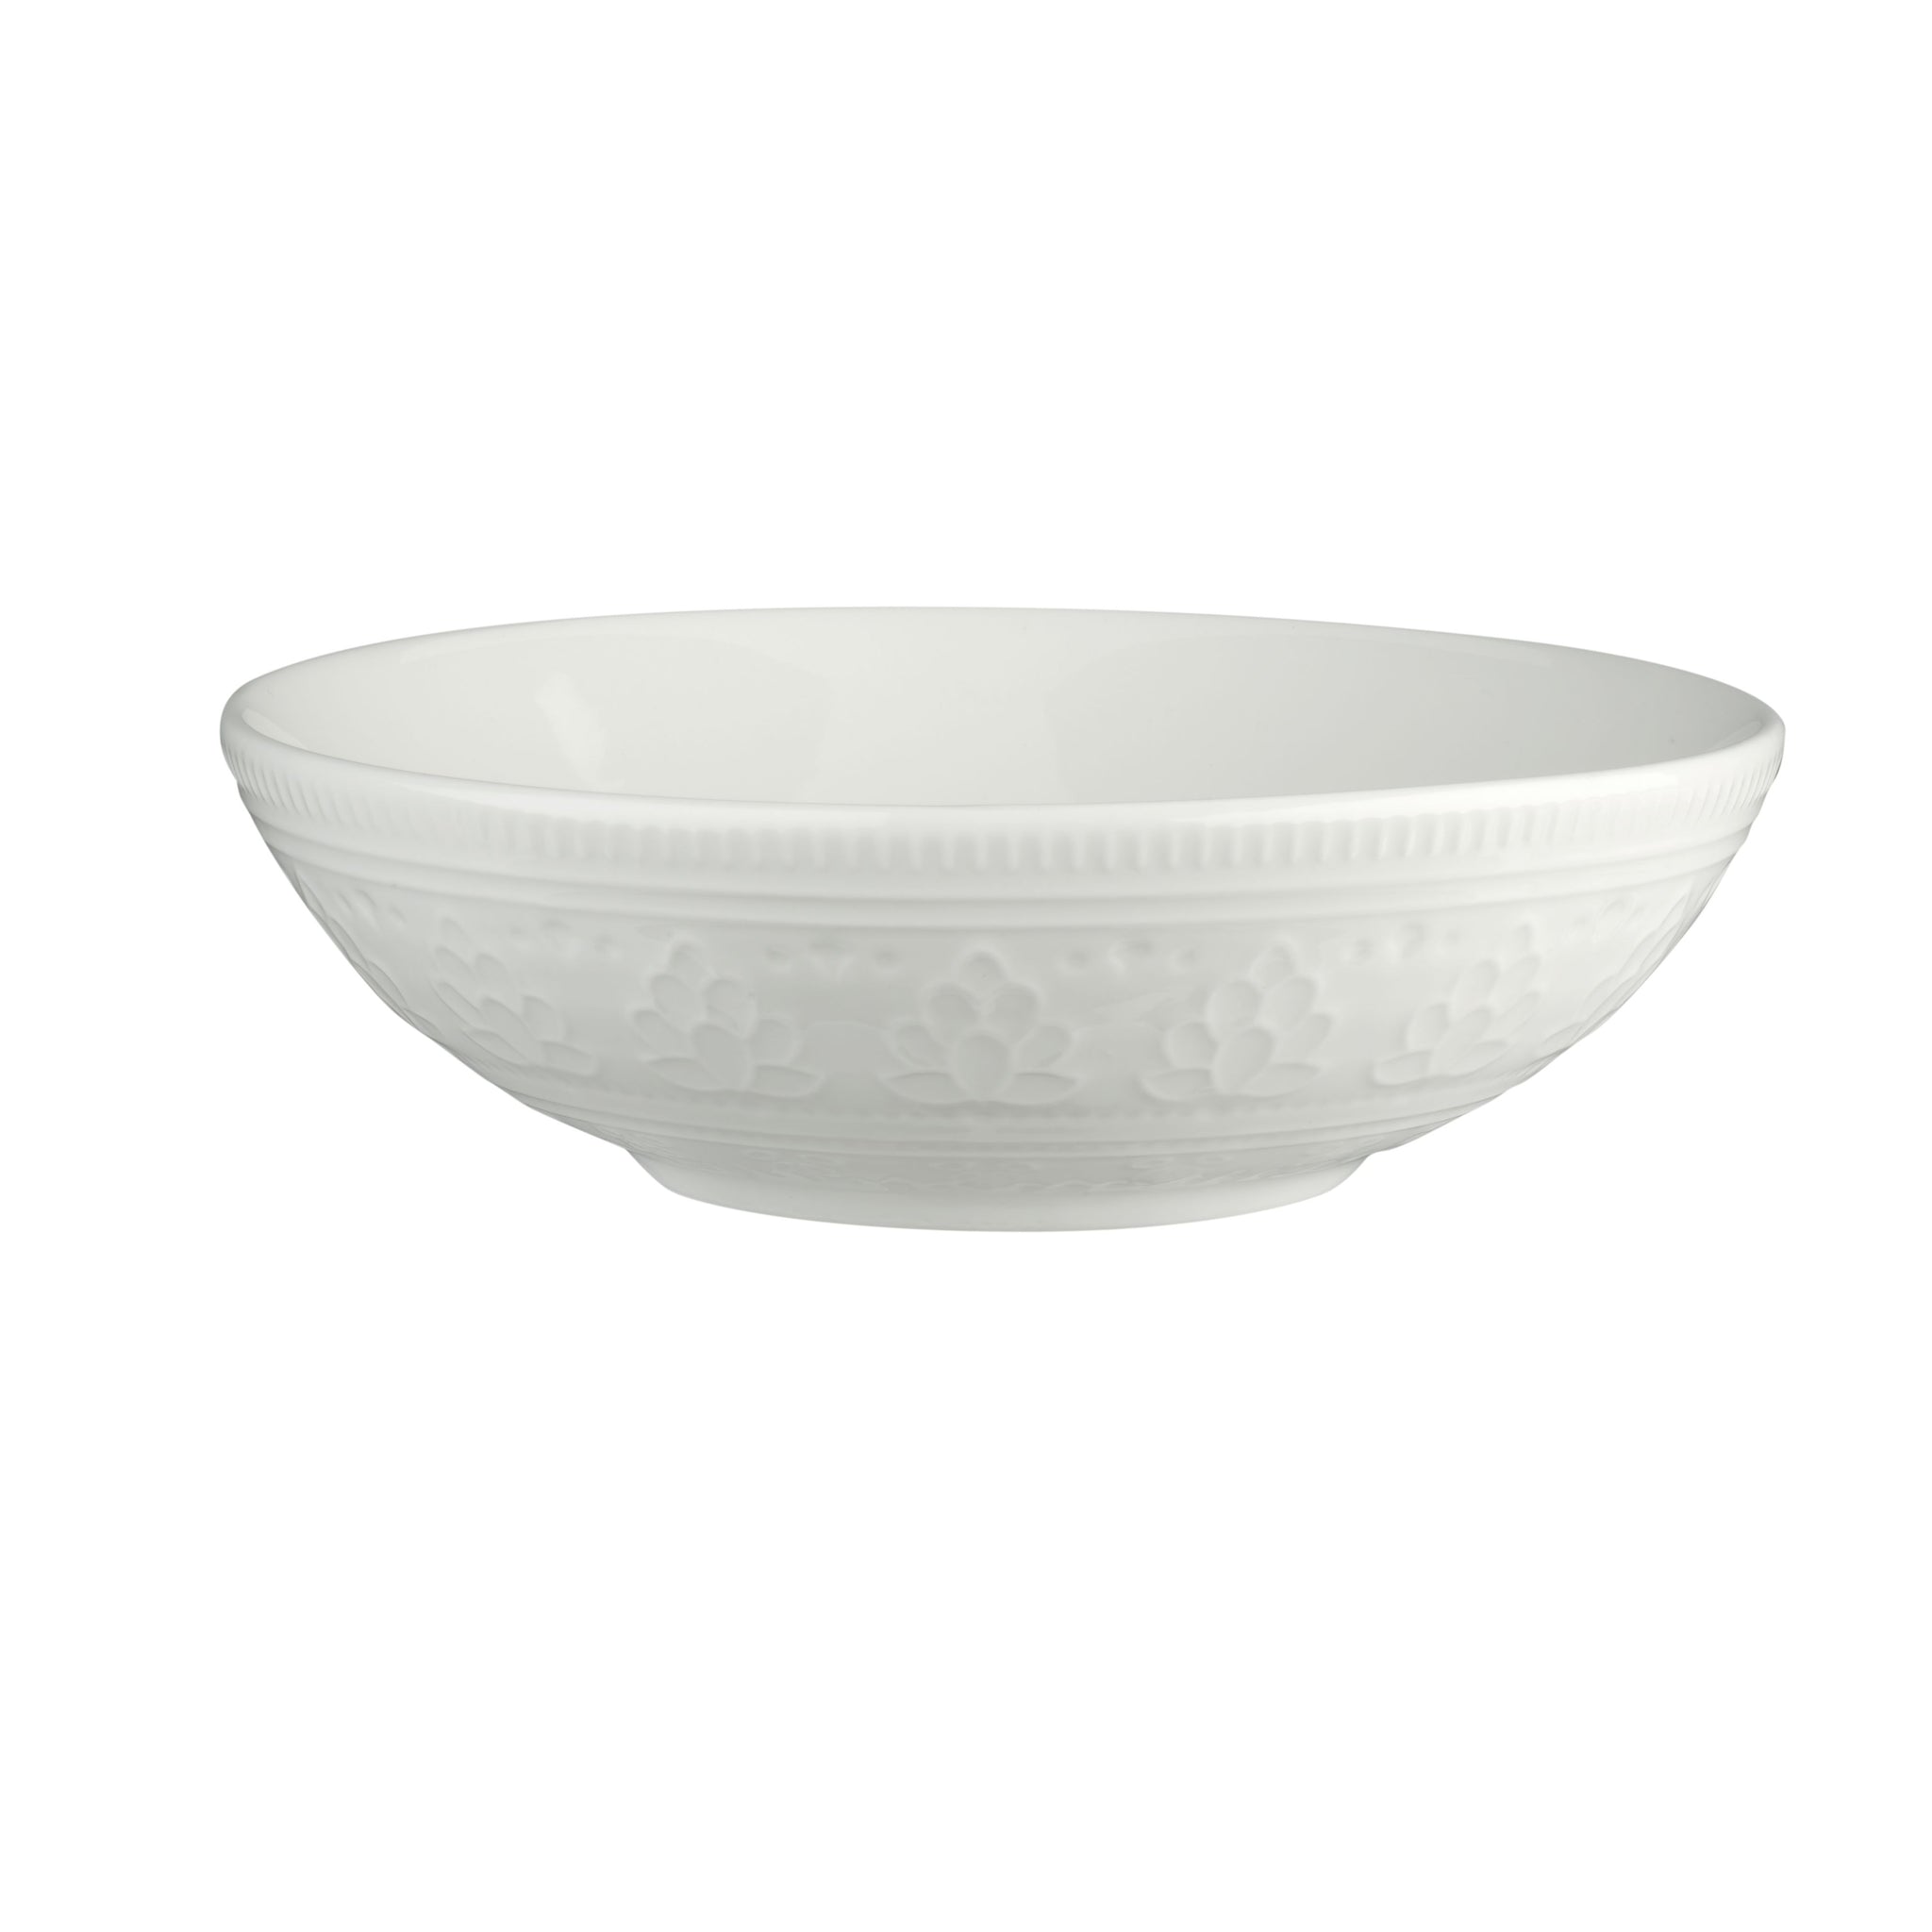 Fez 8.5'' Pasta Bowls, Set of 4 - Euro Ceramica 